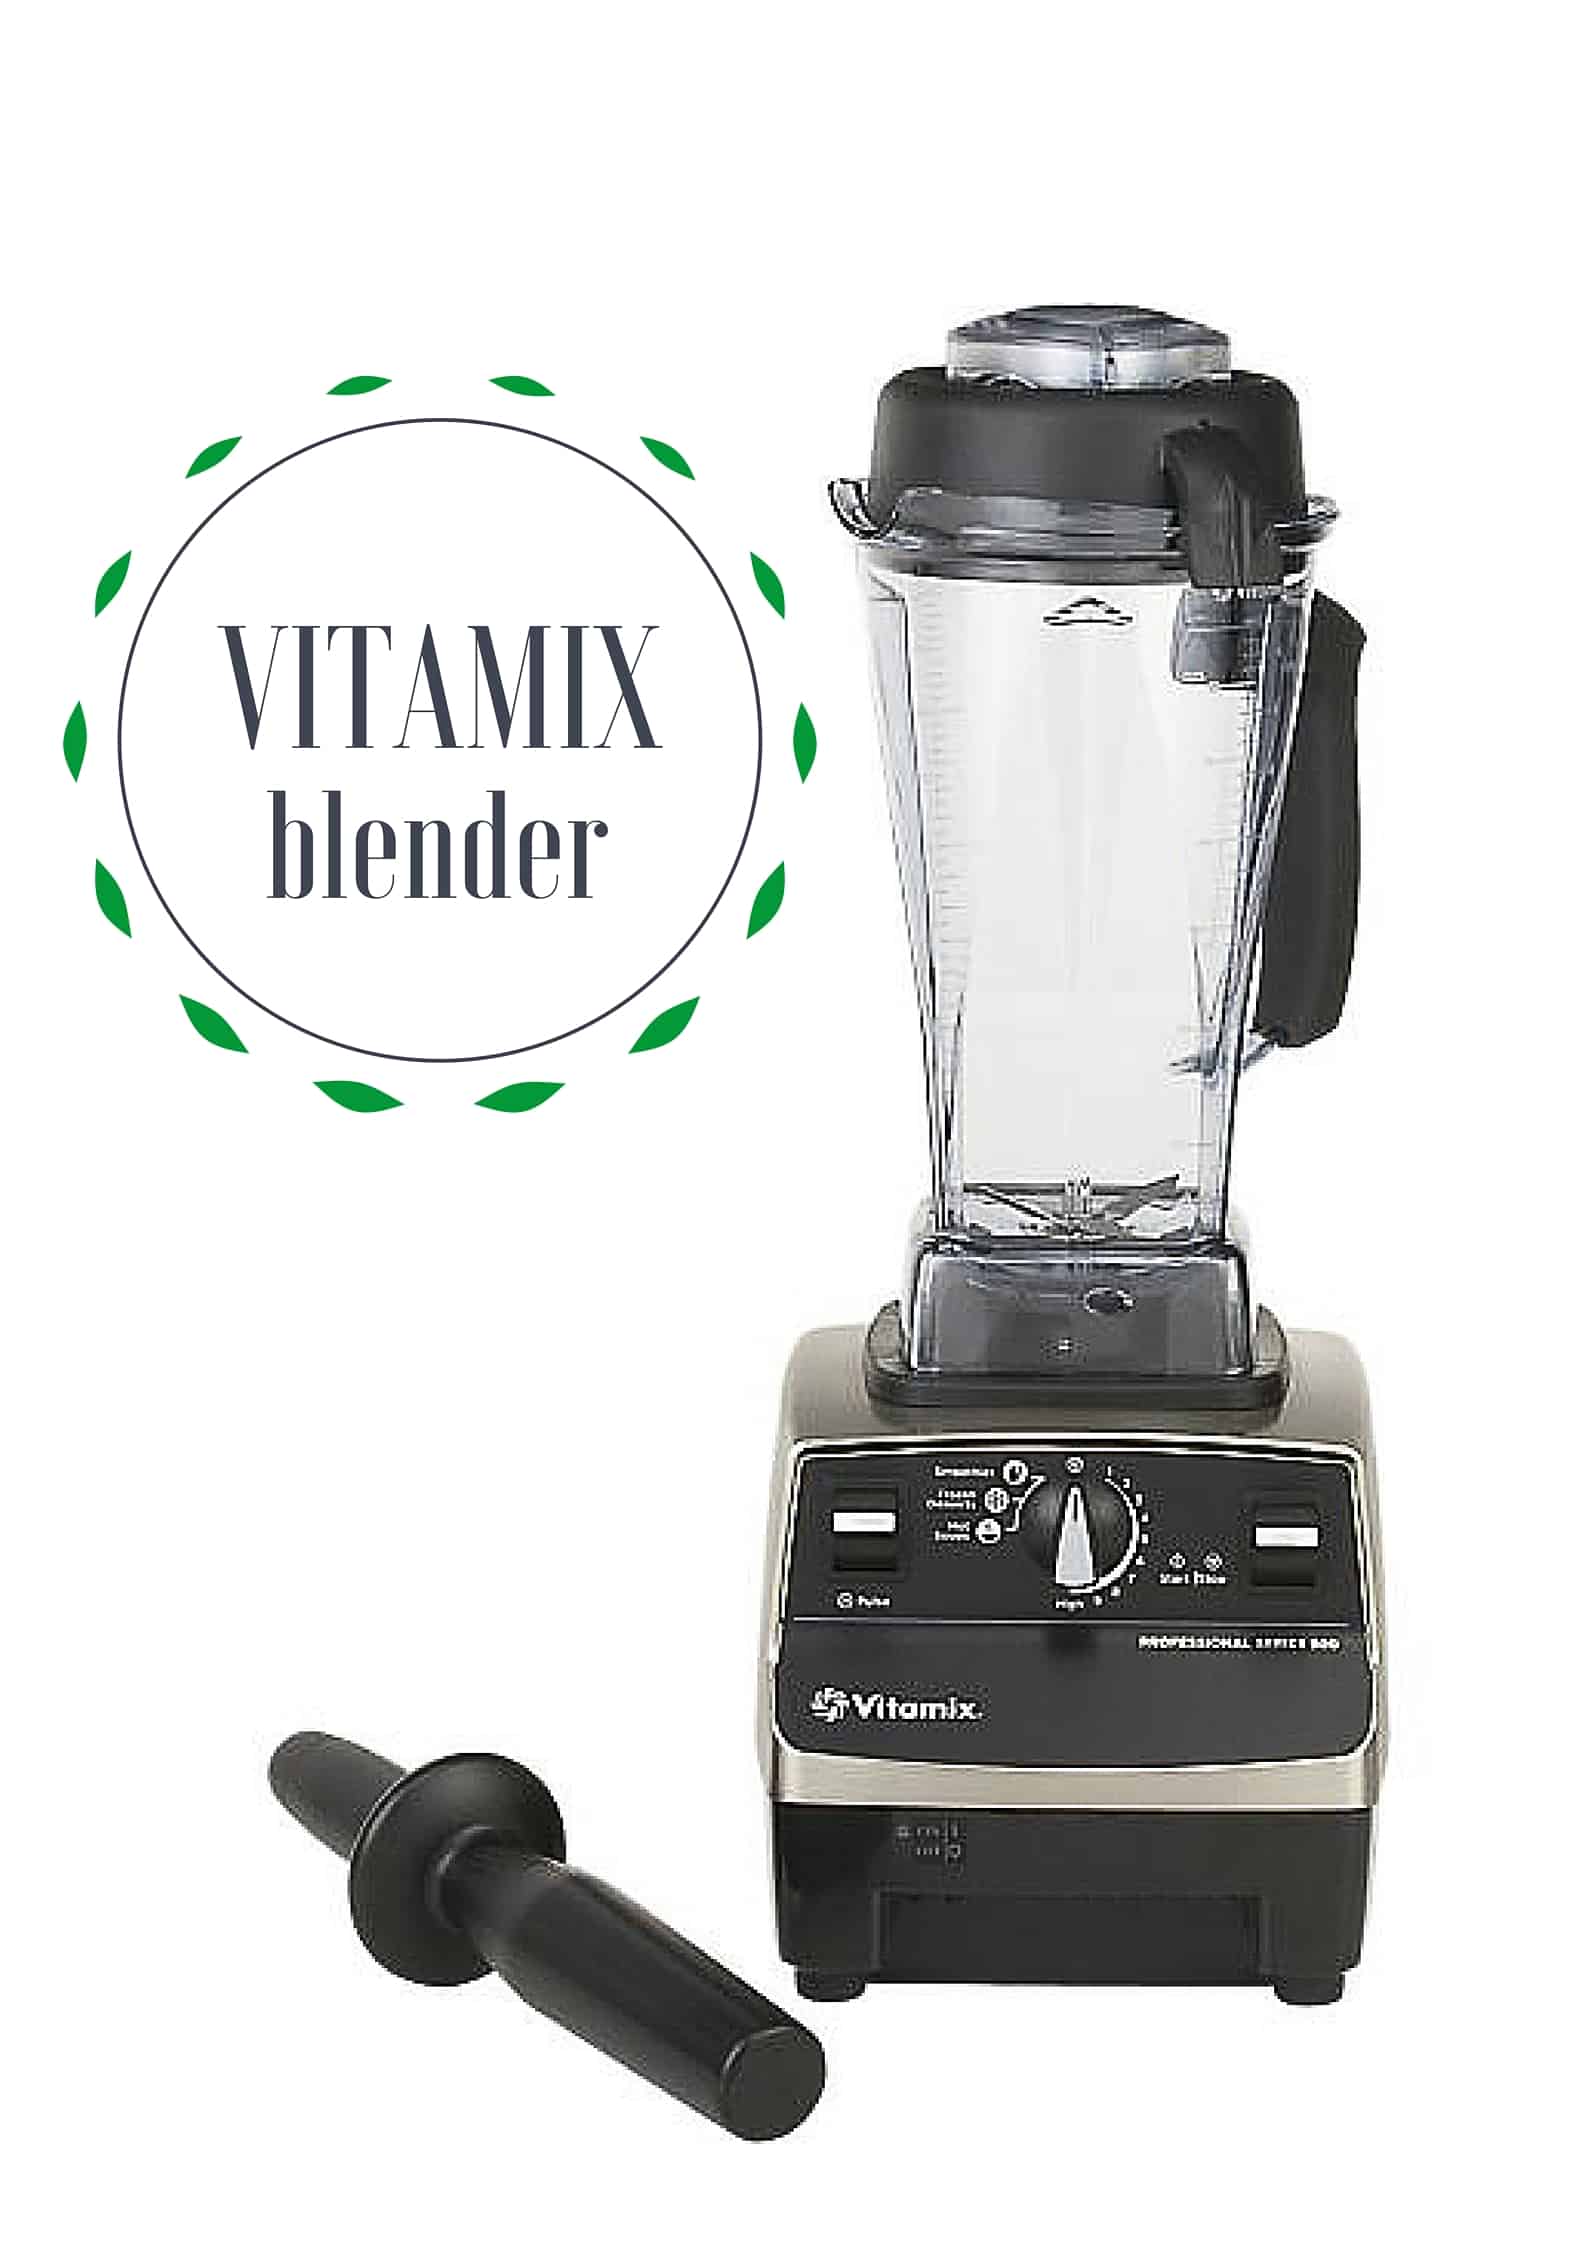 Vitamix blender